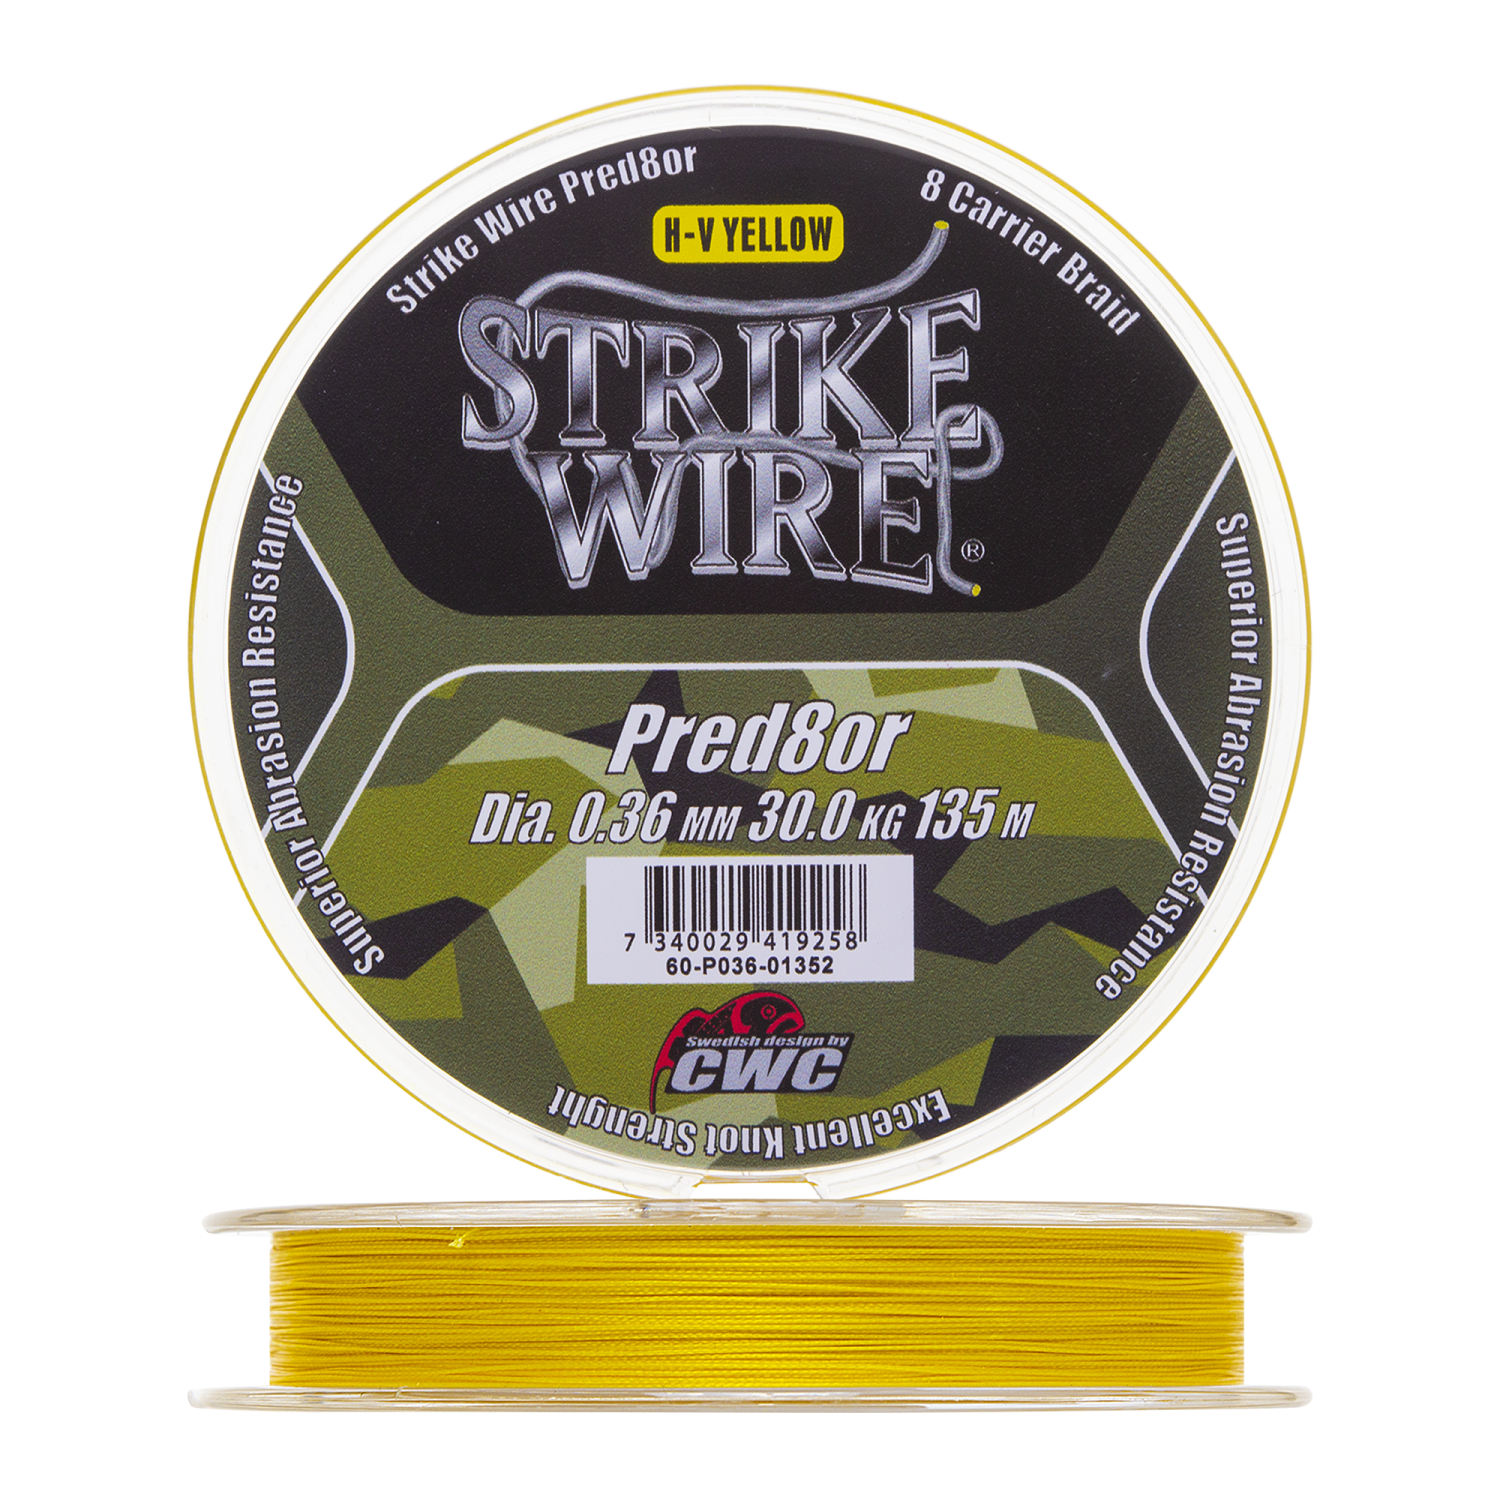 Шнур плетеный CWC Strike Wire Pred8or X8 0,36мм 135м (h-v yellow) cwc strike wire x twelve x12 0 36mm 34kg 135m mossgreen